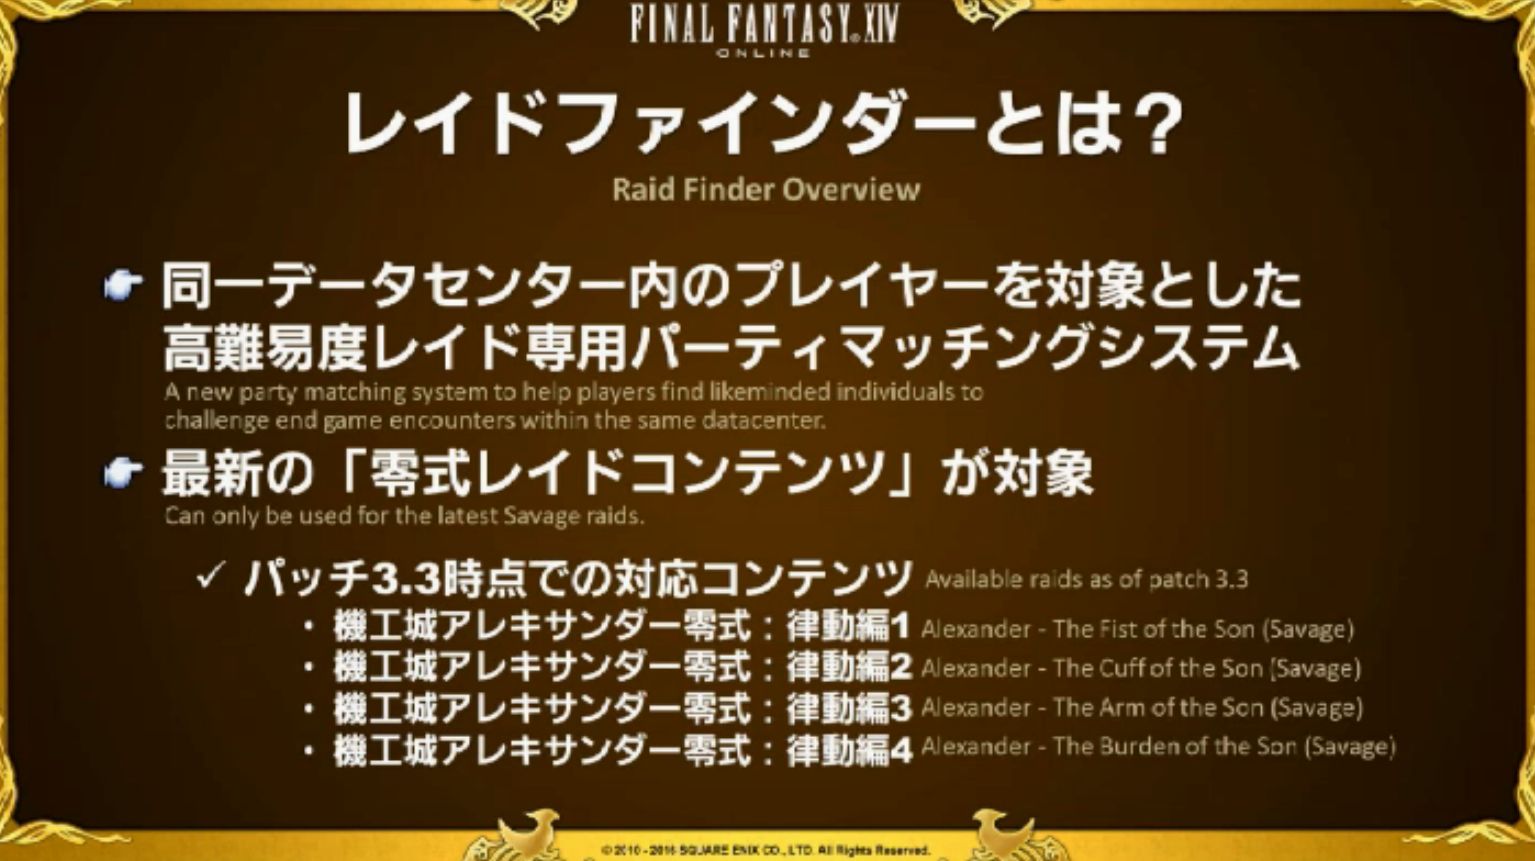 Final Fantasy XIV Raid Finder